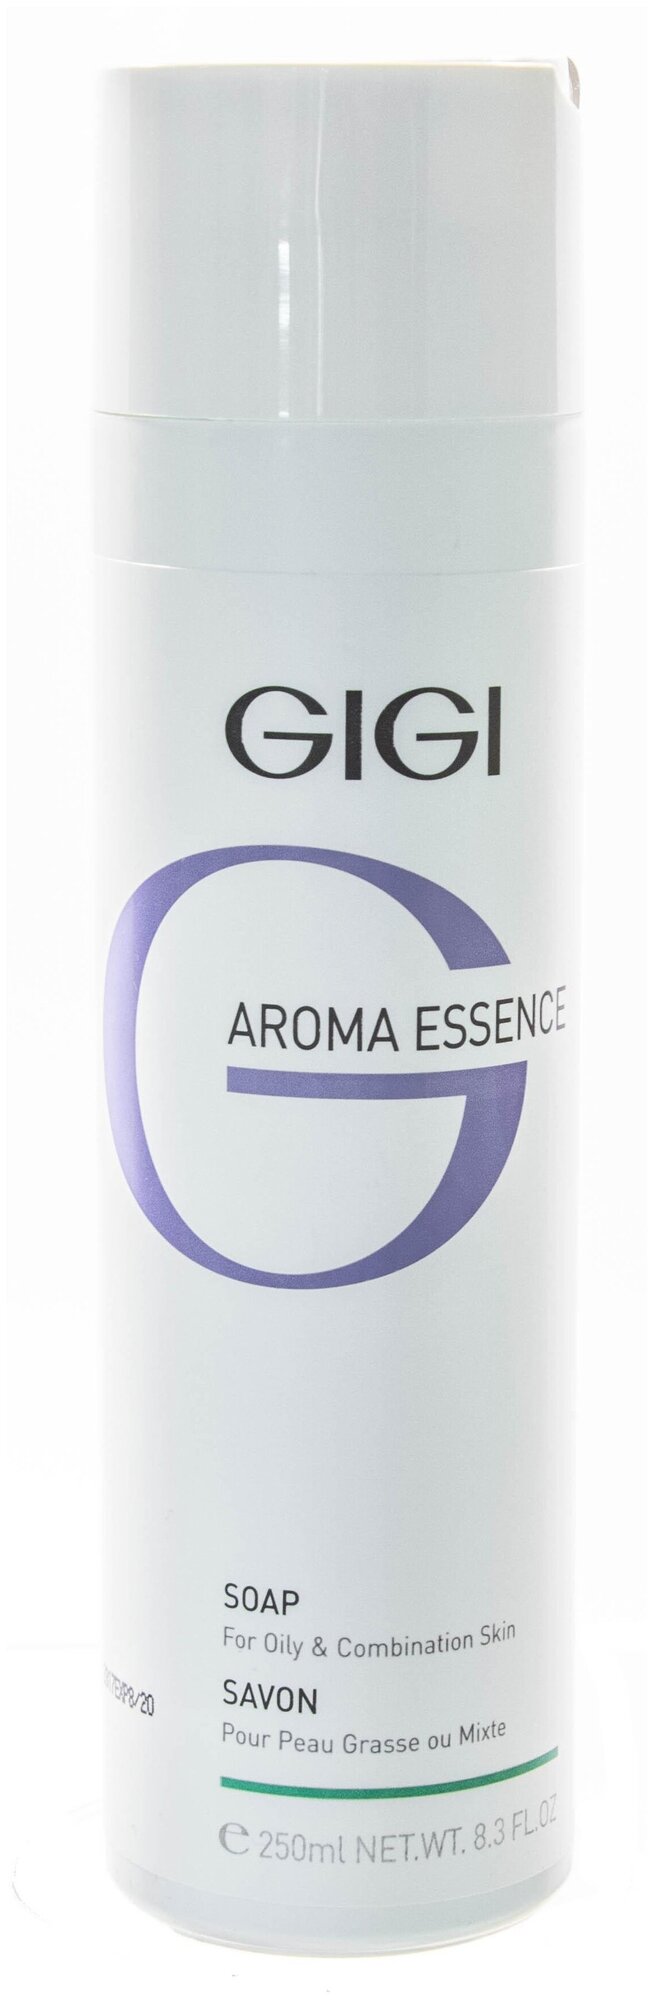 Gigi жидкое мыло Aroma Essence для жирной и комбинированной кожи, 250 мл